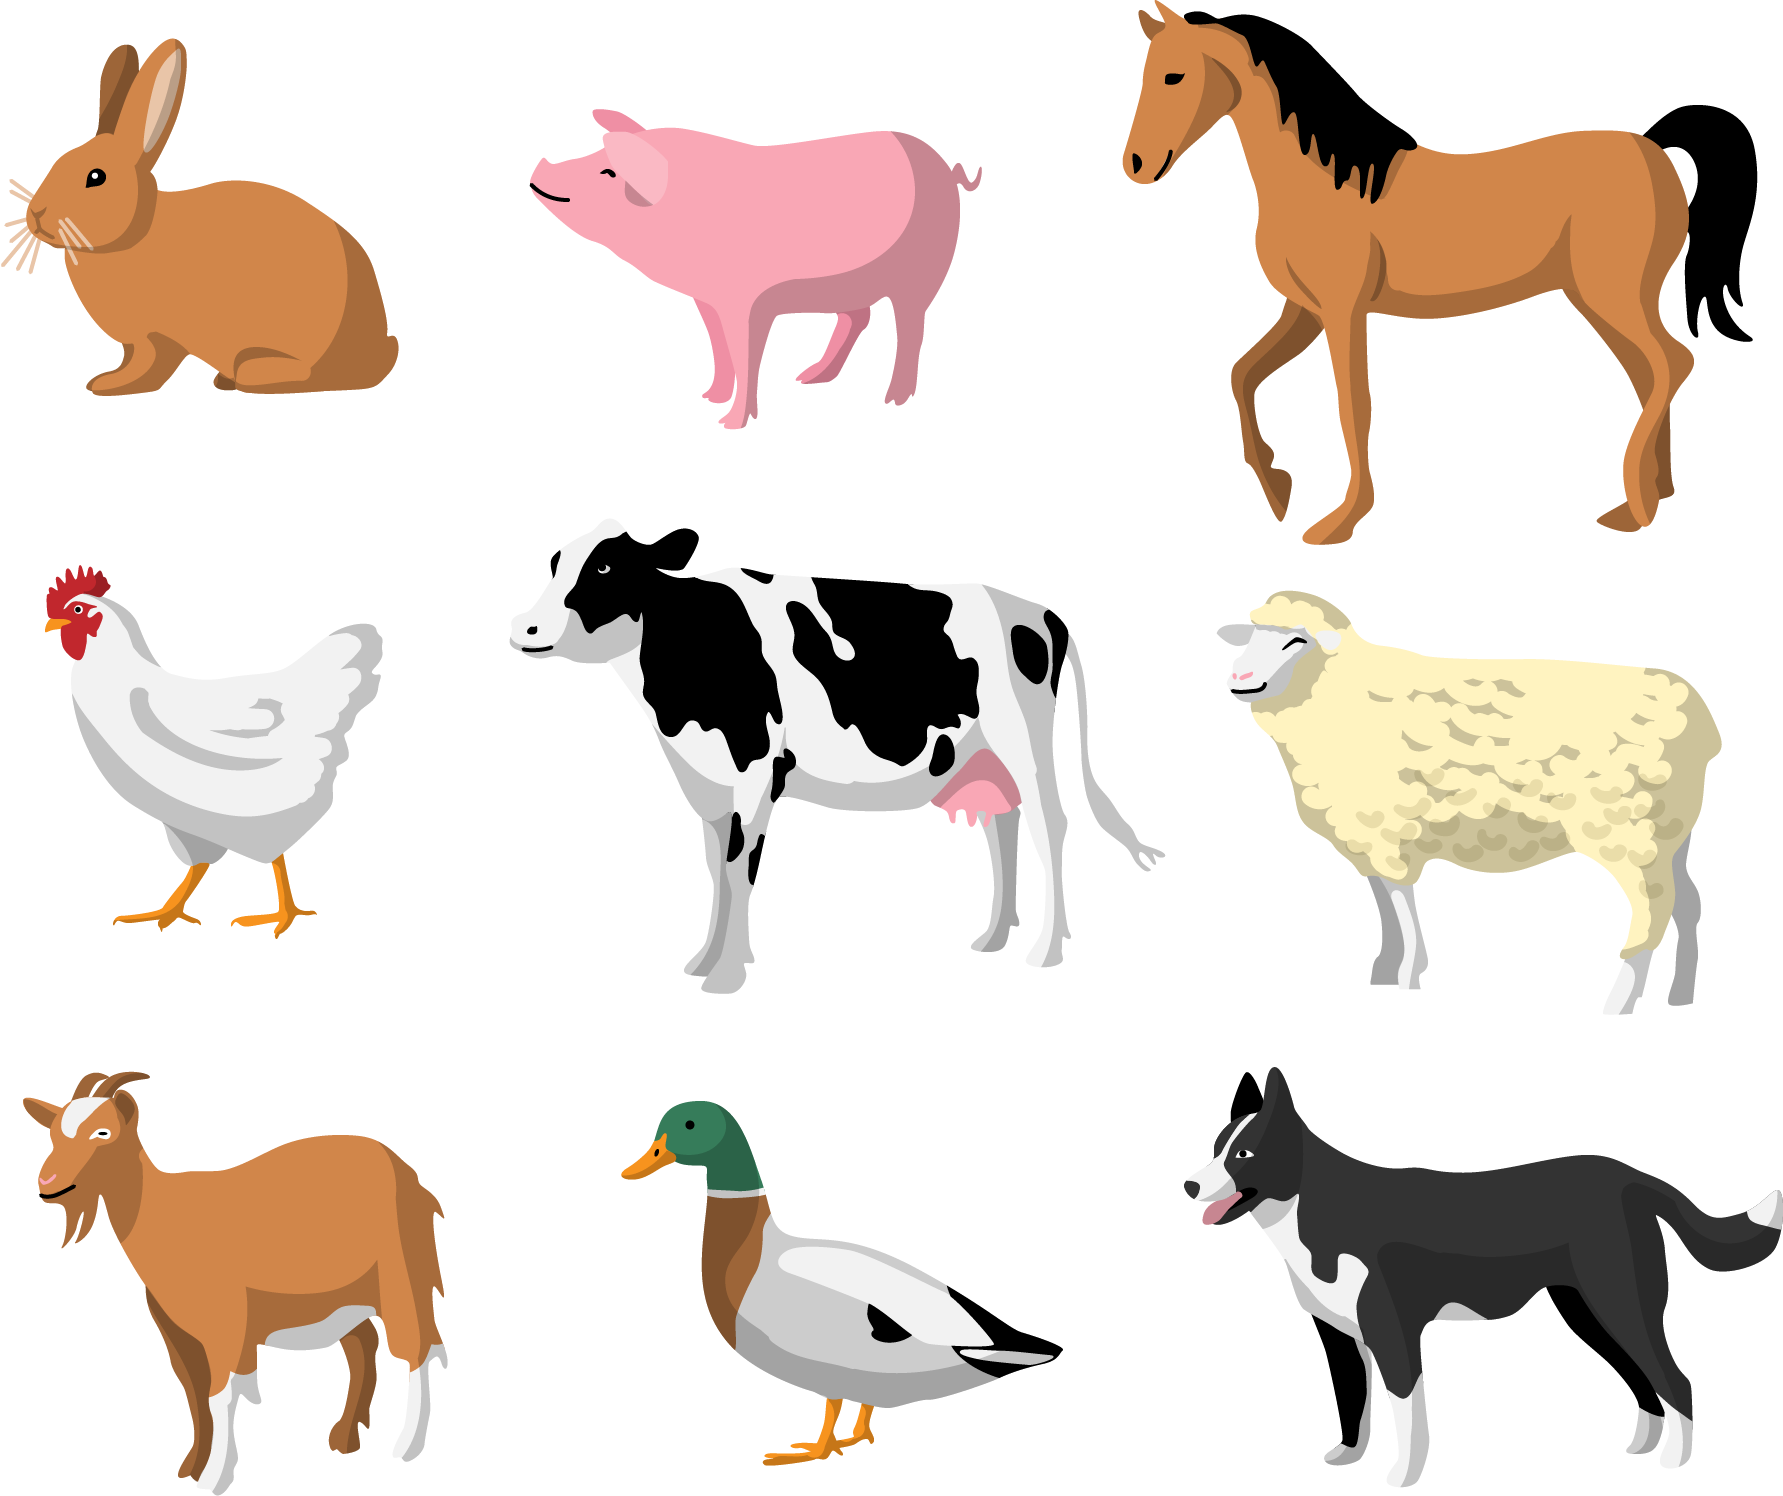 Домашние животные для детей. Иллюстрации домашних животных. Изображения домашних животных для детей. Домашние животные мультяшные.